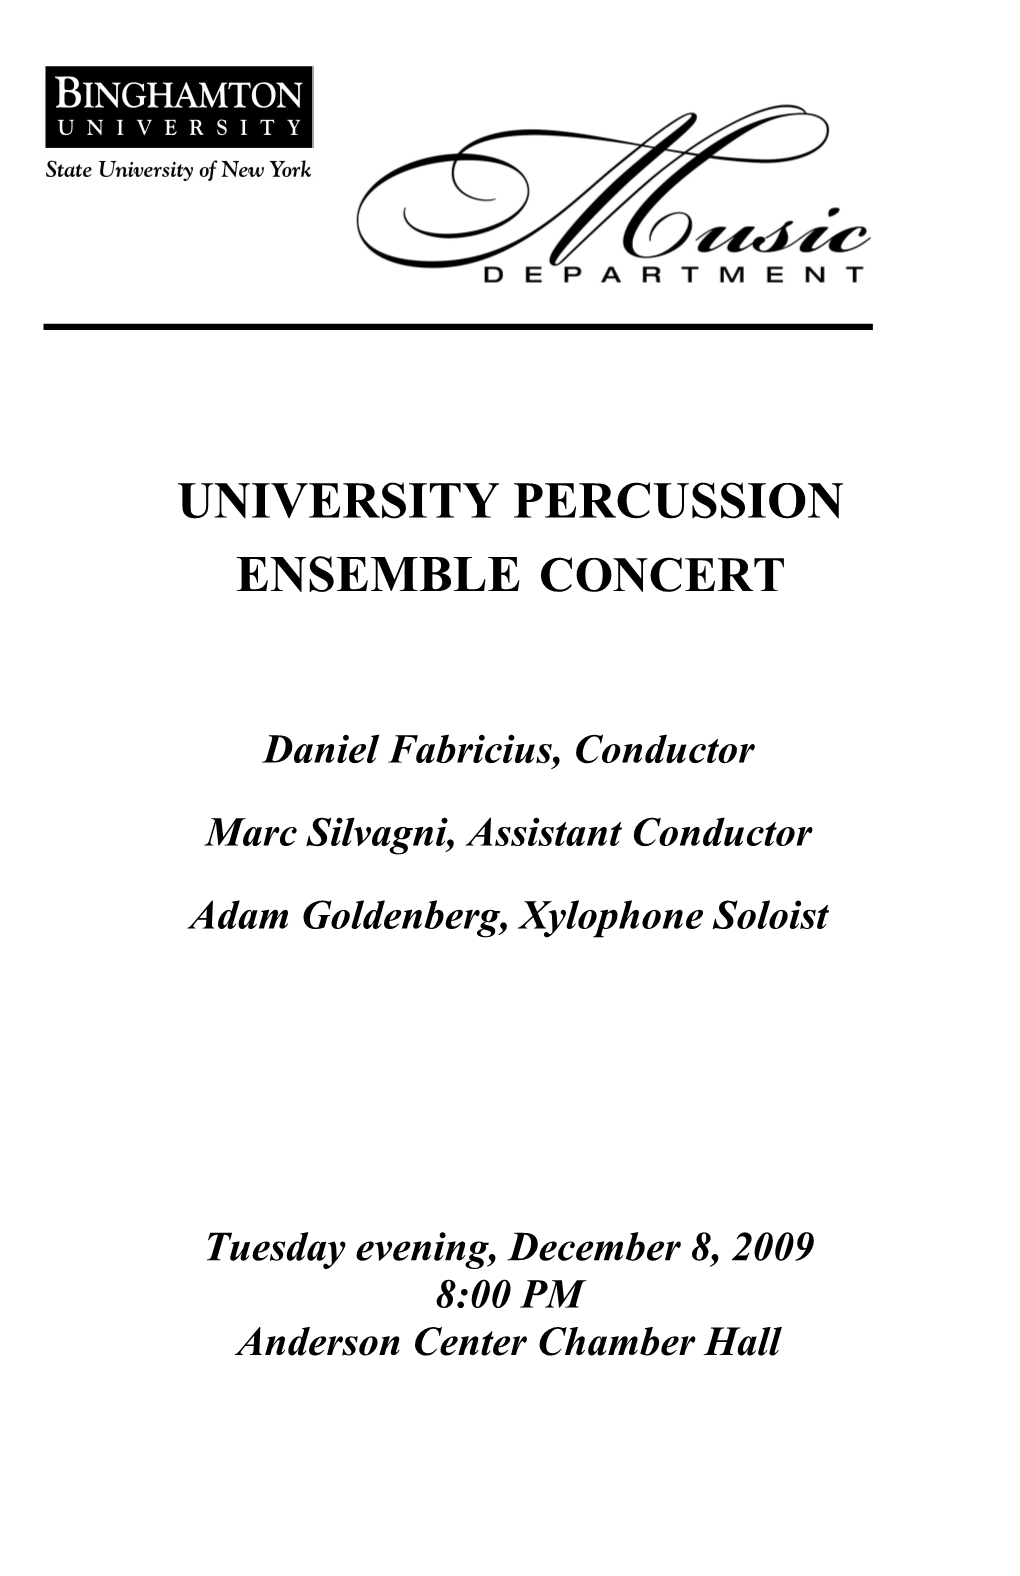 UNIVERSITY PERCUSSION Ensembleconcert